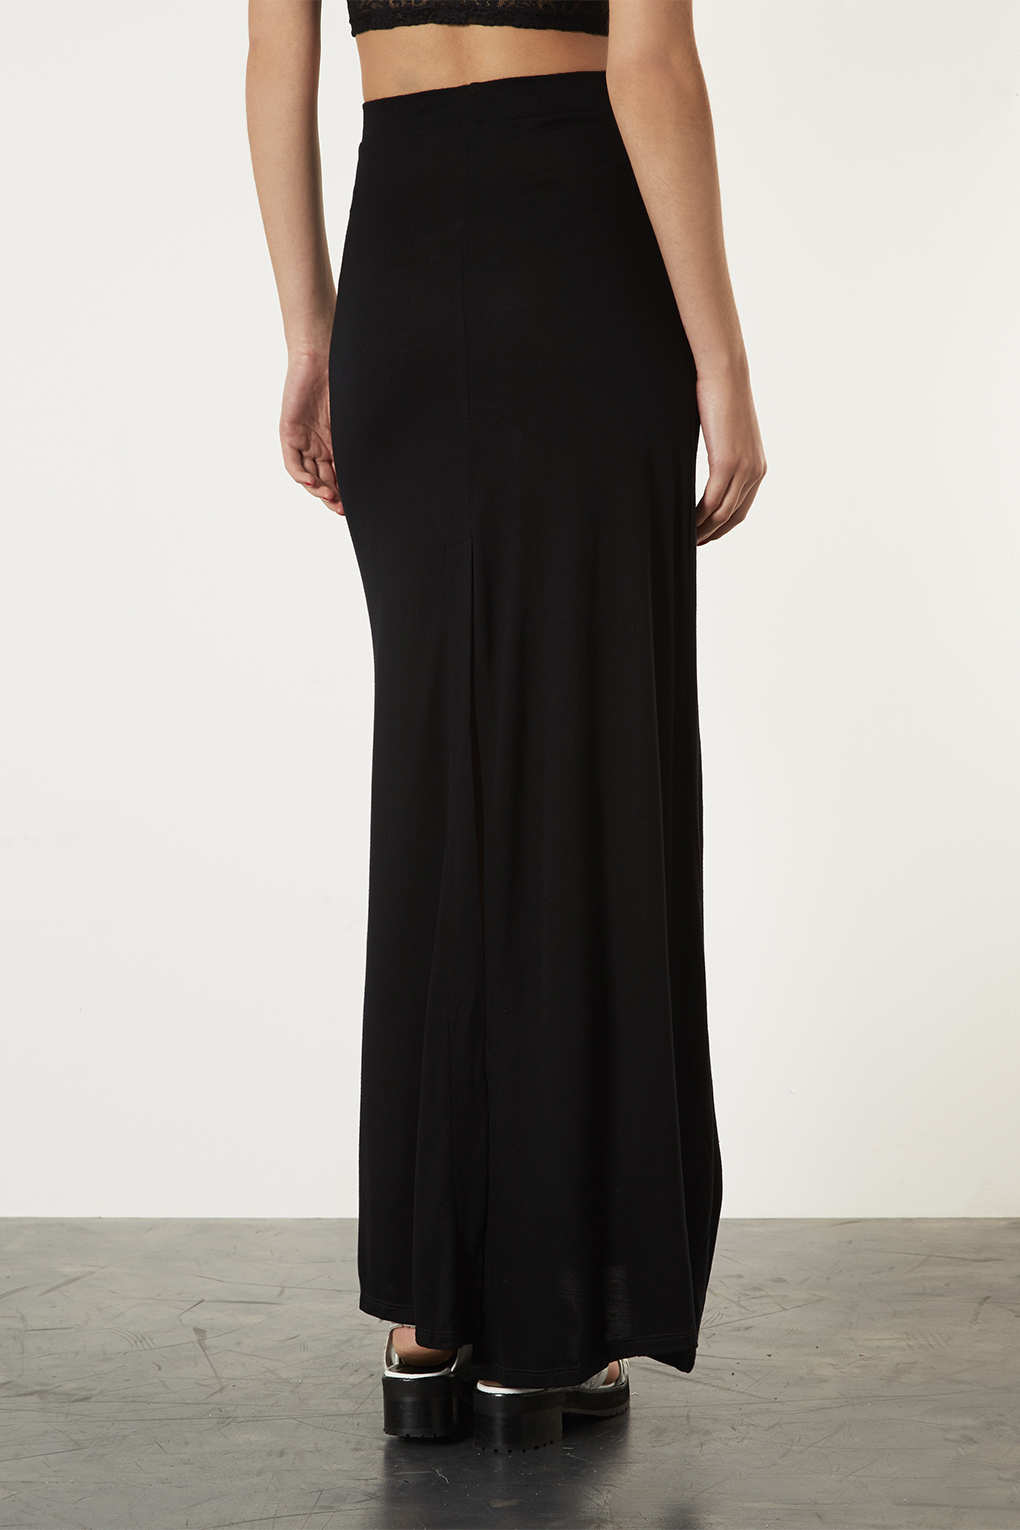 Lyst - Topshop Tall Split Back Maxi Skirt in Black